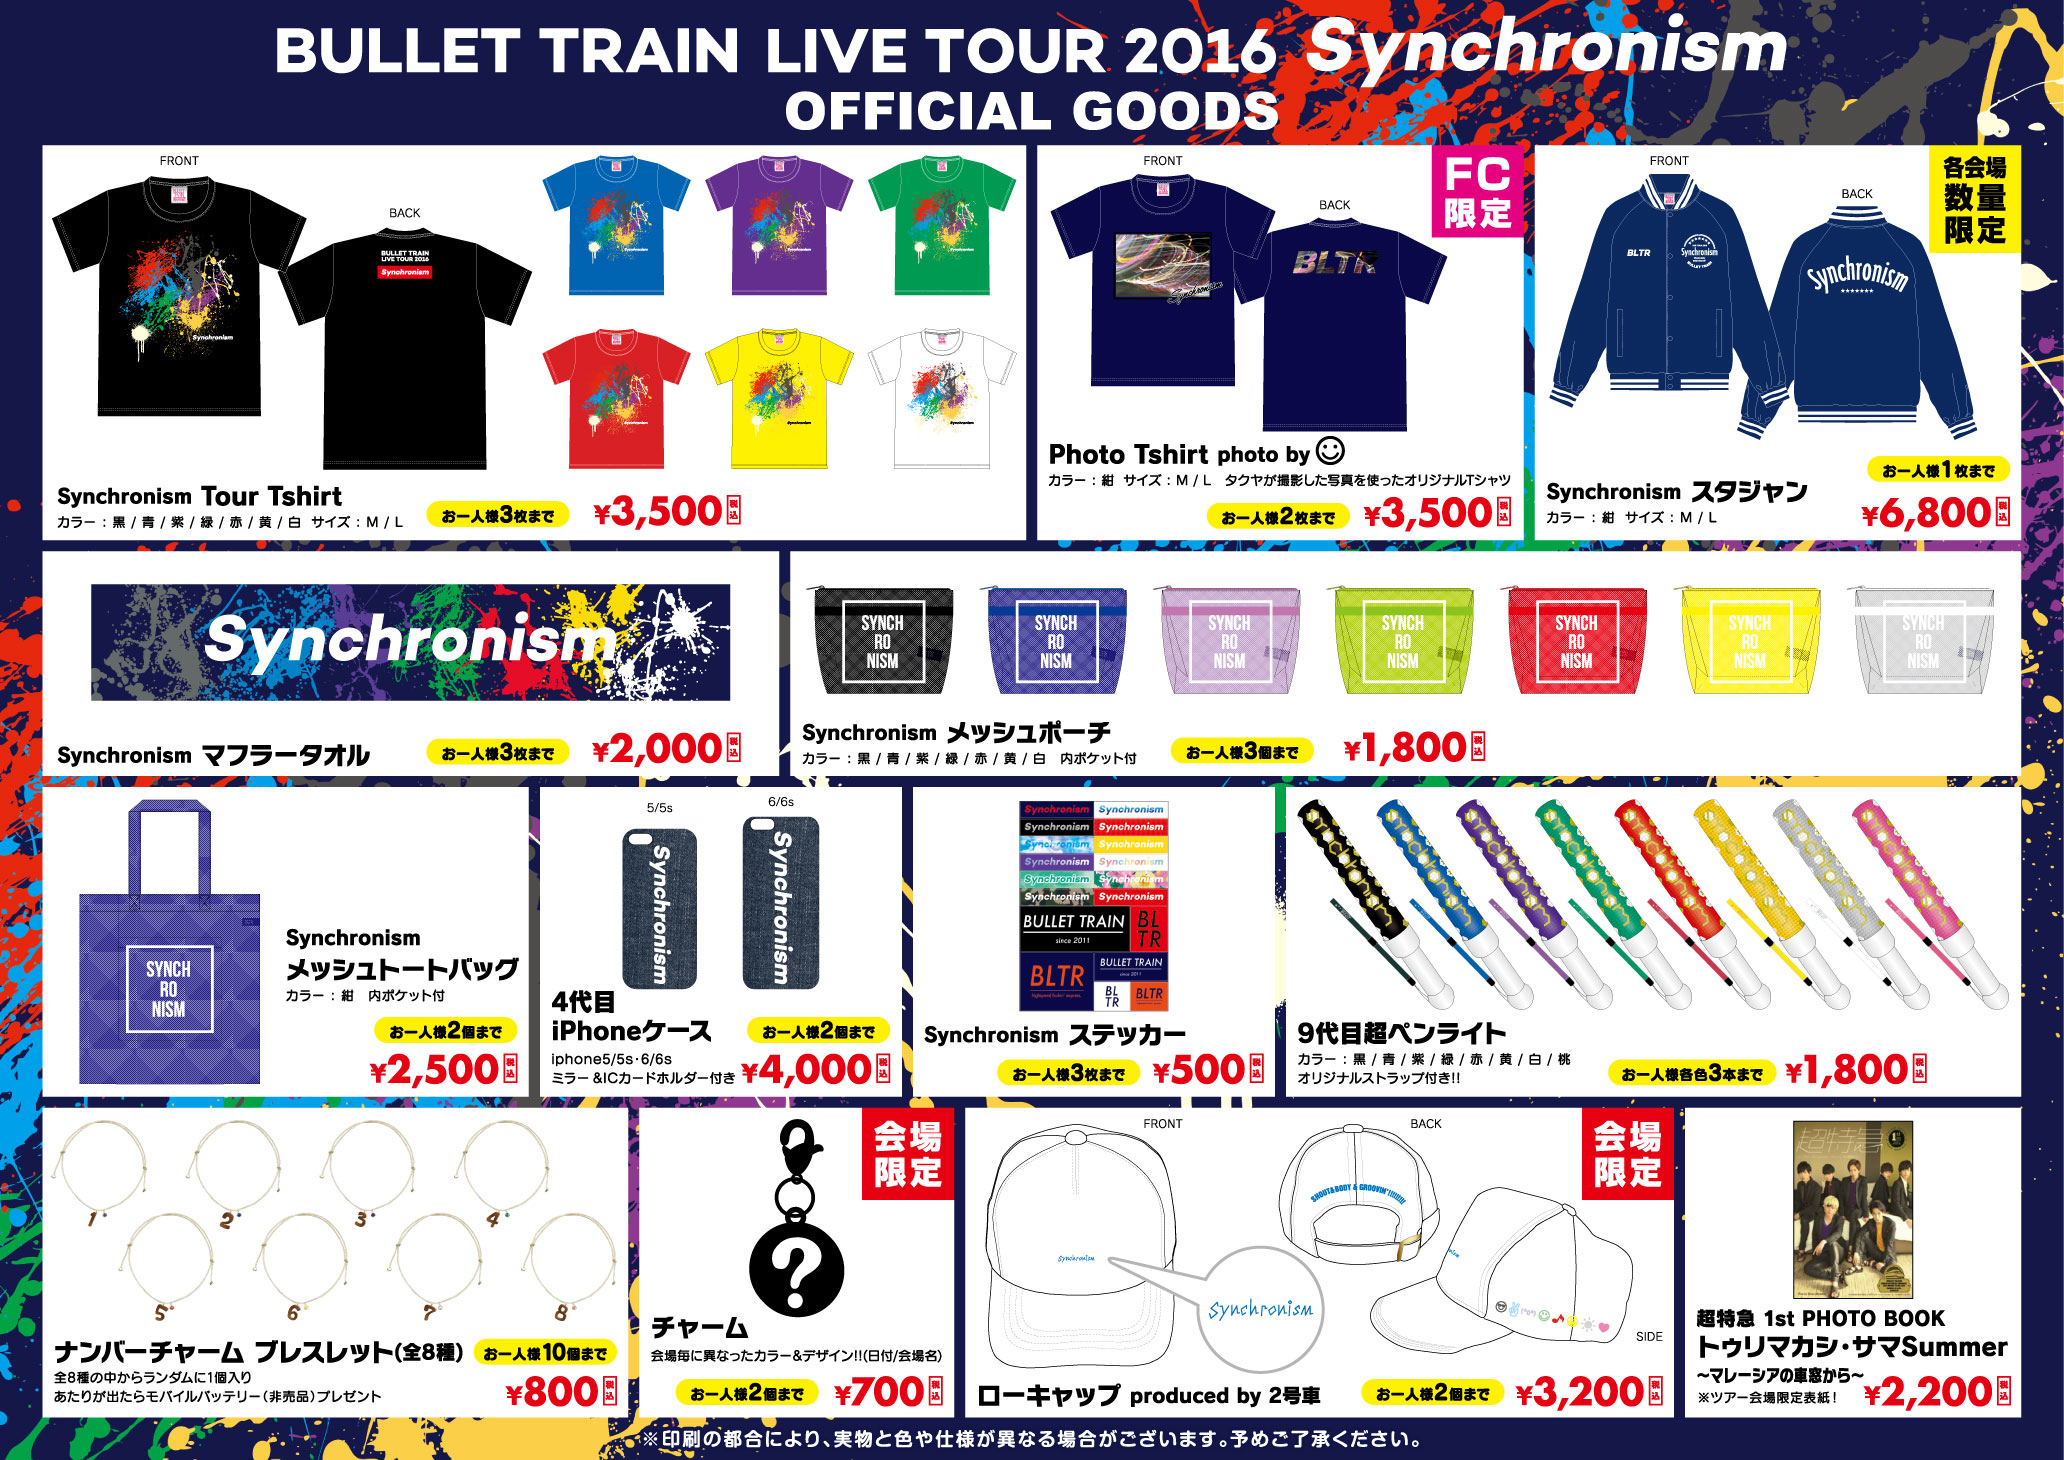 「超特急 LIVE TOUR 2016 Synchronism～Body & Groovin’～」グッズ販売について | 超特急